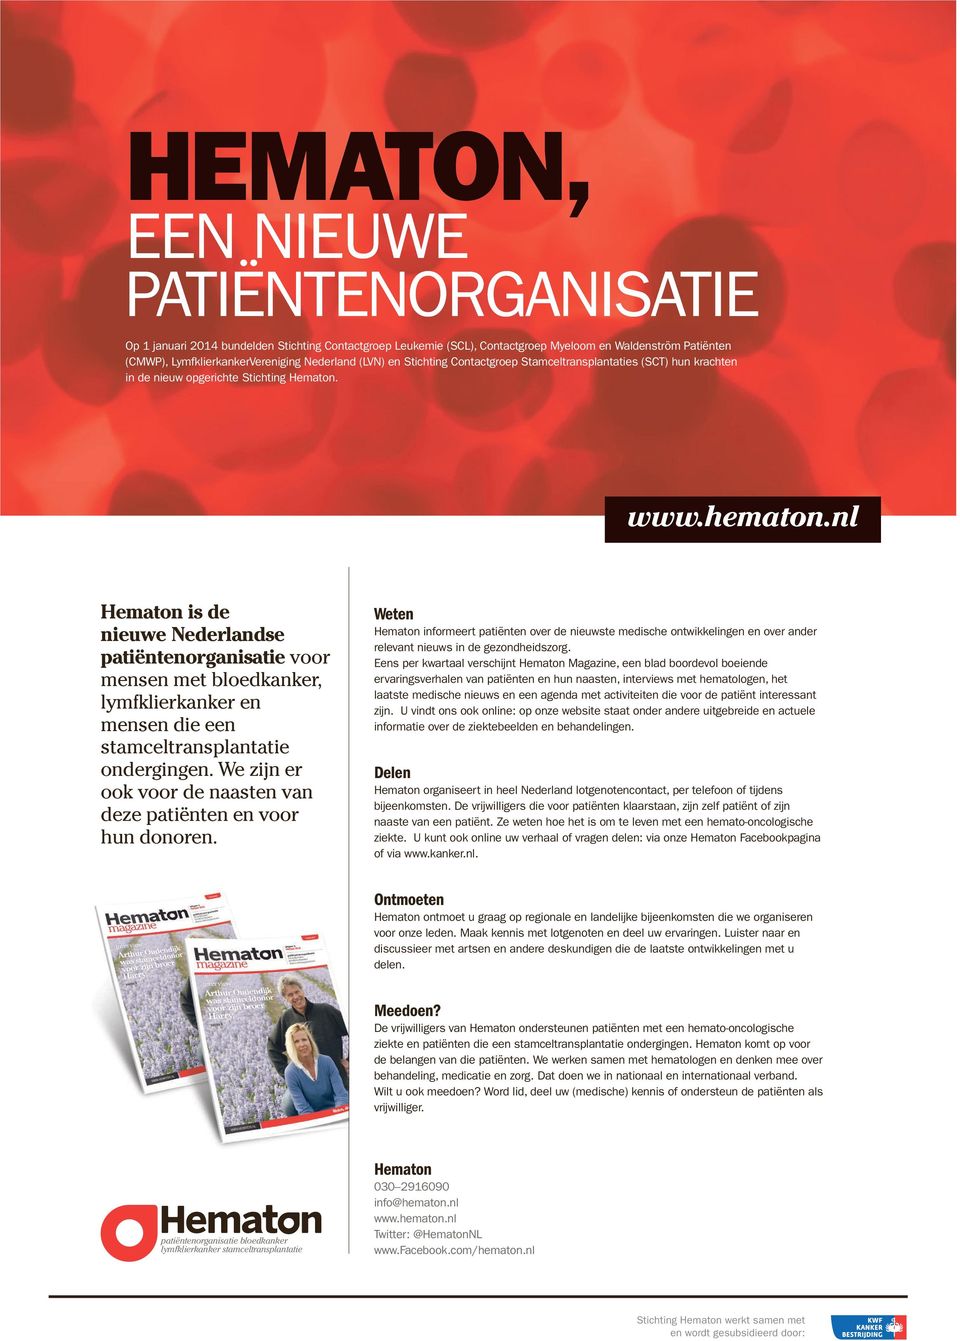 nl Hematon is de nieuwe Nederlandse patiëntenorganisatie voor mensen met bloedkanker, lymfklierkanker en mensen die een stamceltransplantatie ondergingen.